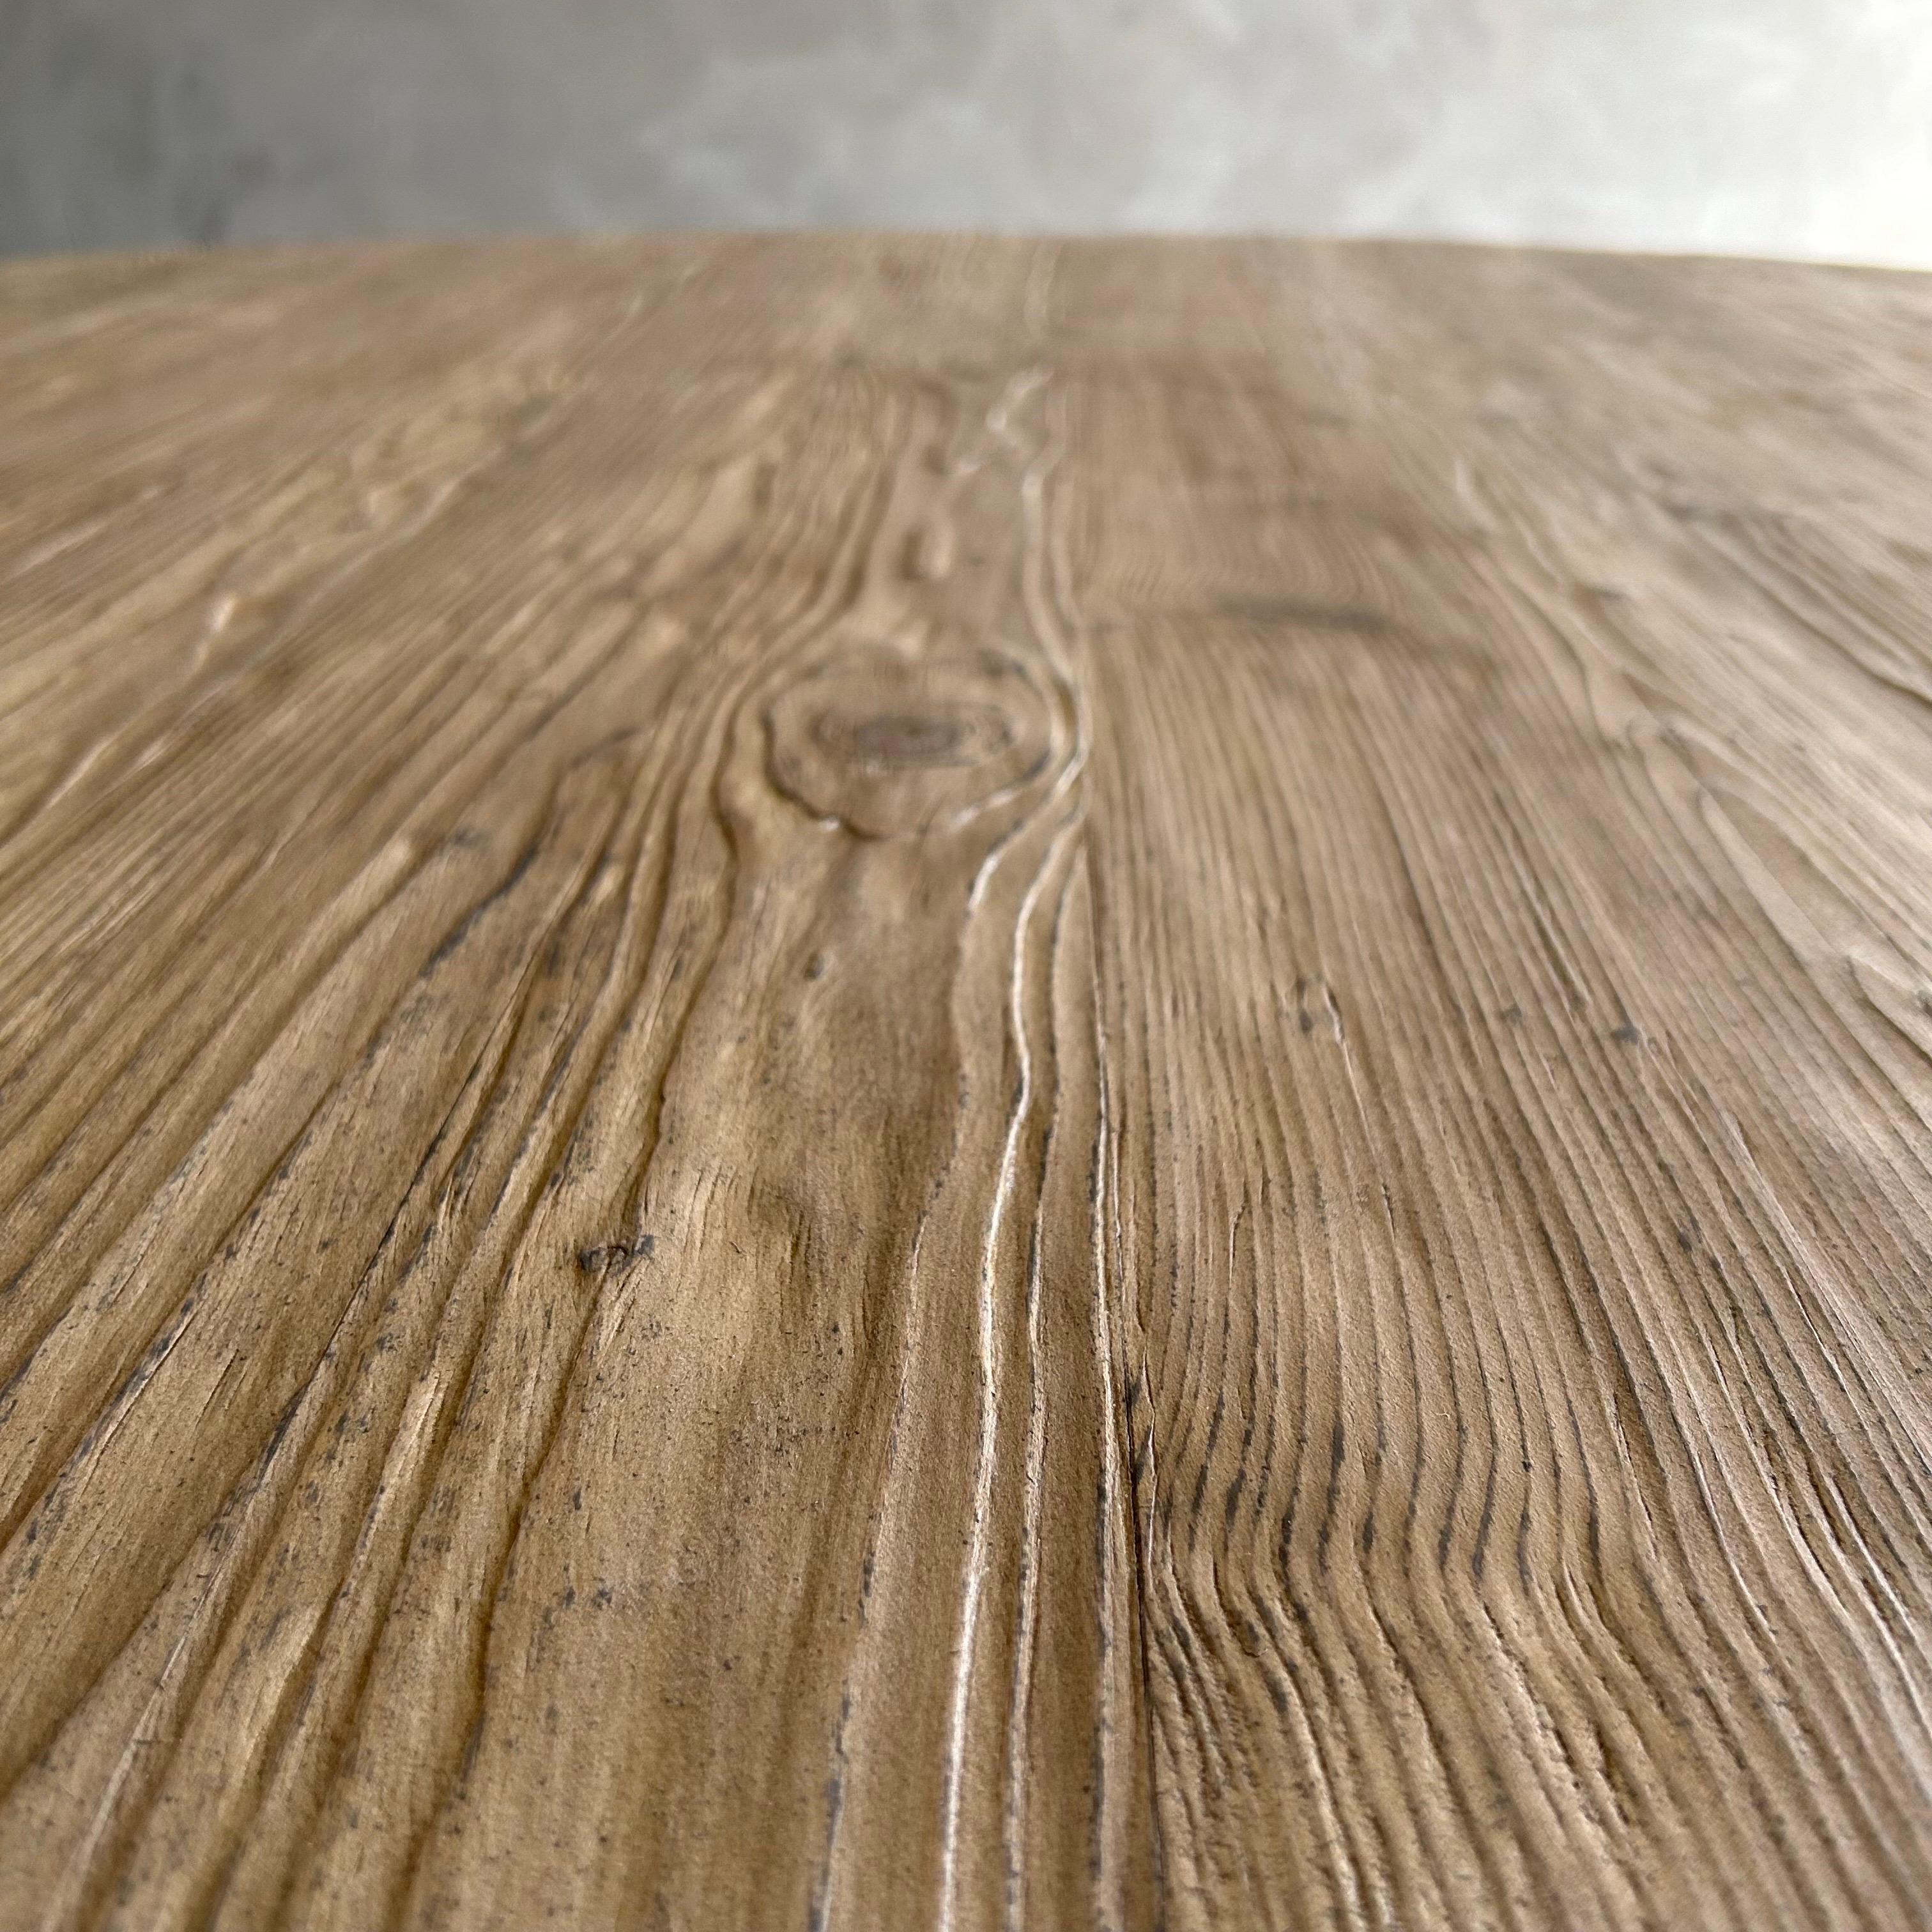 Table de salle à manger en bois récupéré, fini Wood Wood Naturel 71